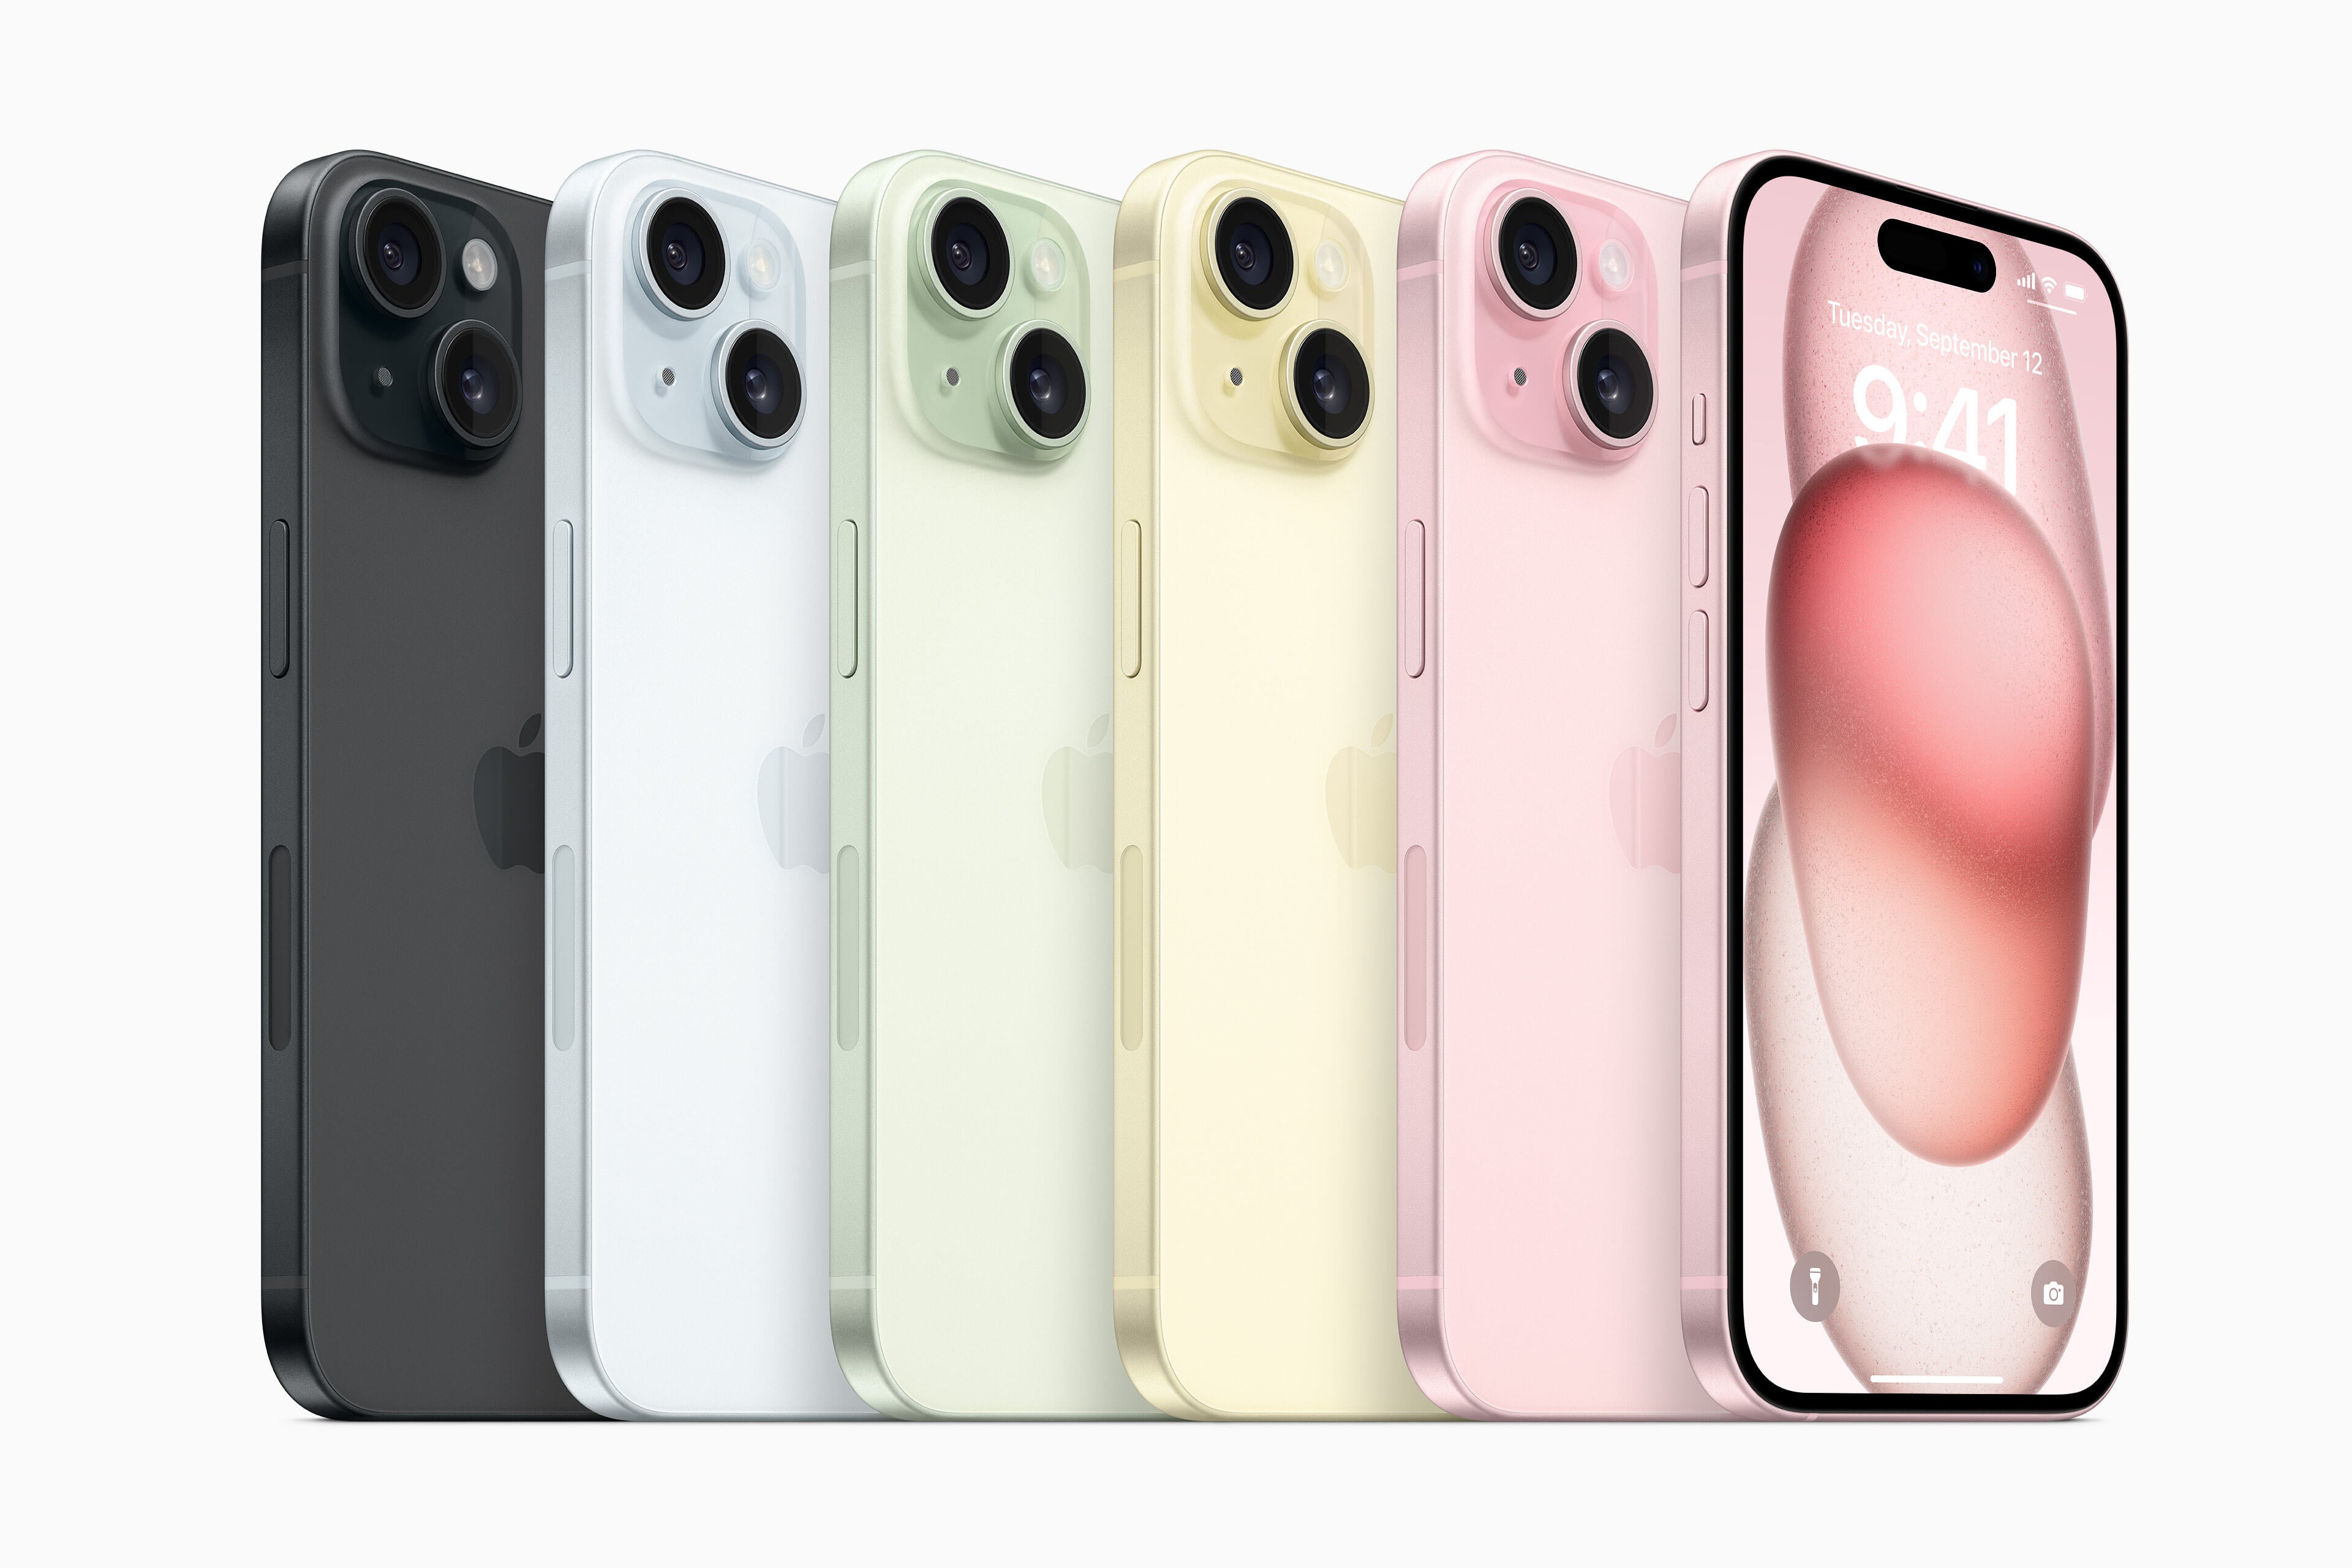 Opțiuni de culoare iPhone 15 - negru, albastru, verde, galben, roz (de la stânga la dreapta) - Data lansării iPhone 15, preț, specificații și caracteristici obligatorii